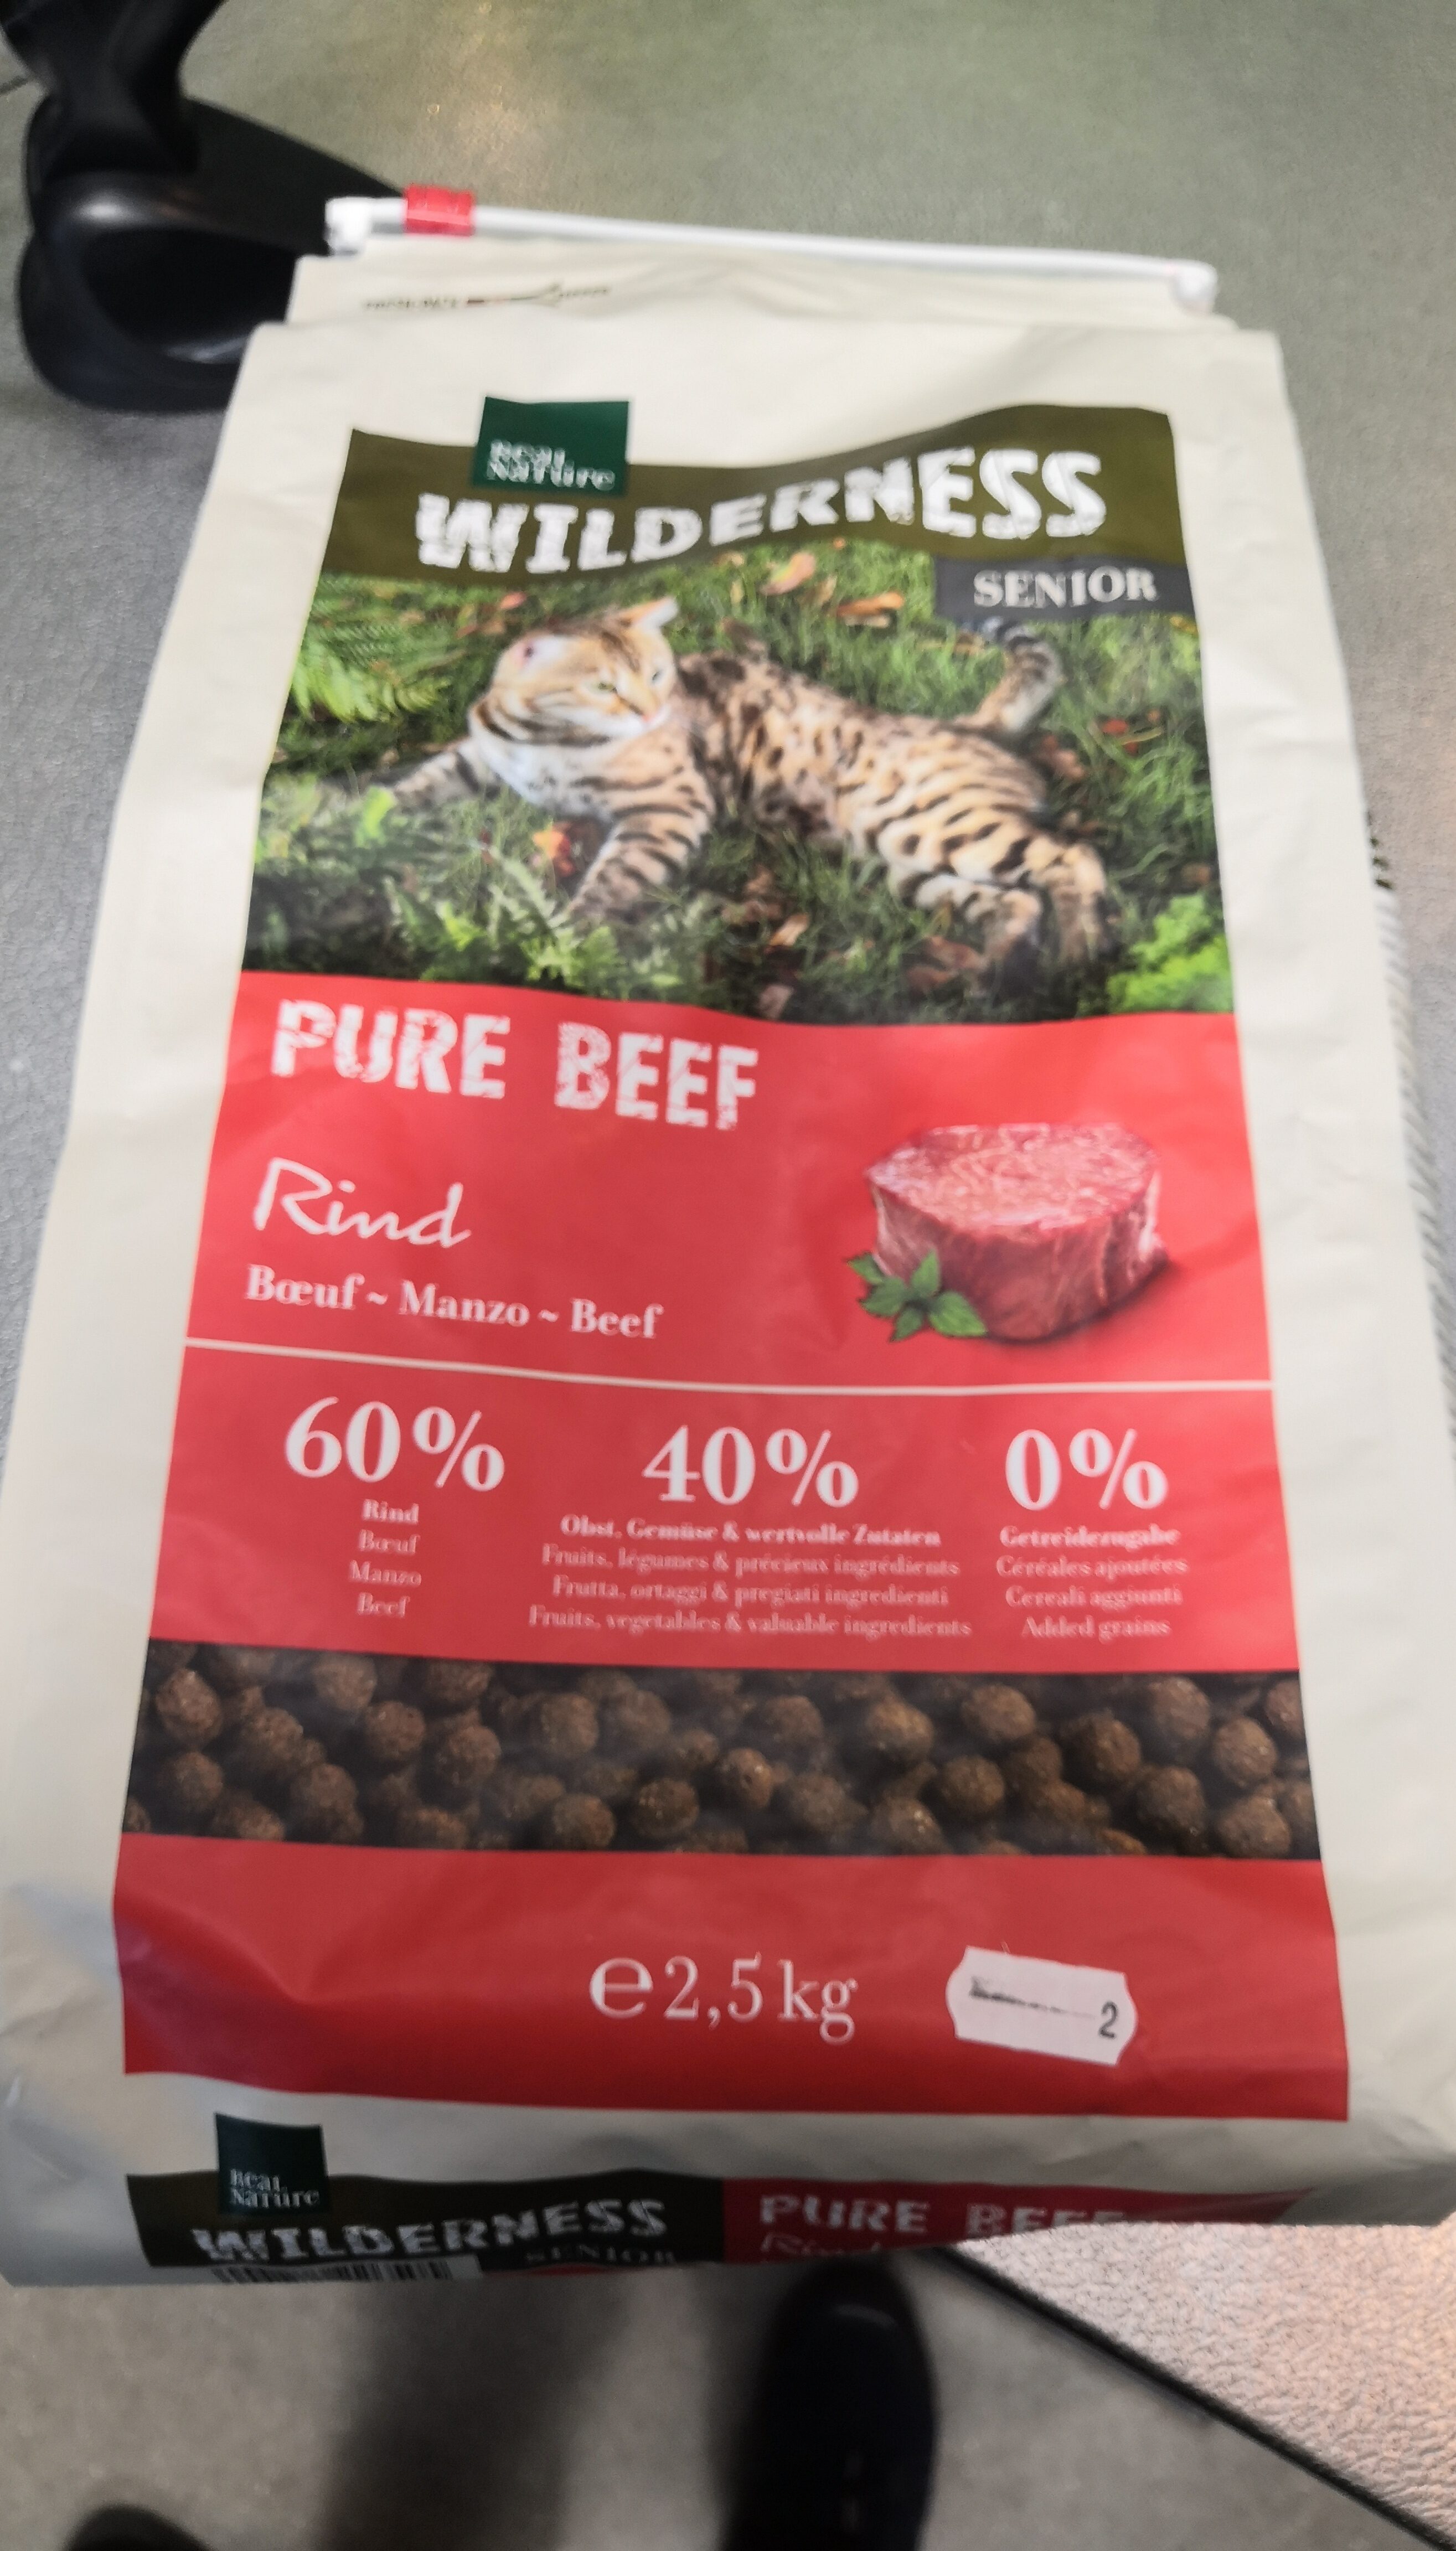 Rn wild senior beef cat - Product - en